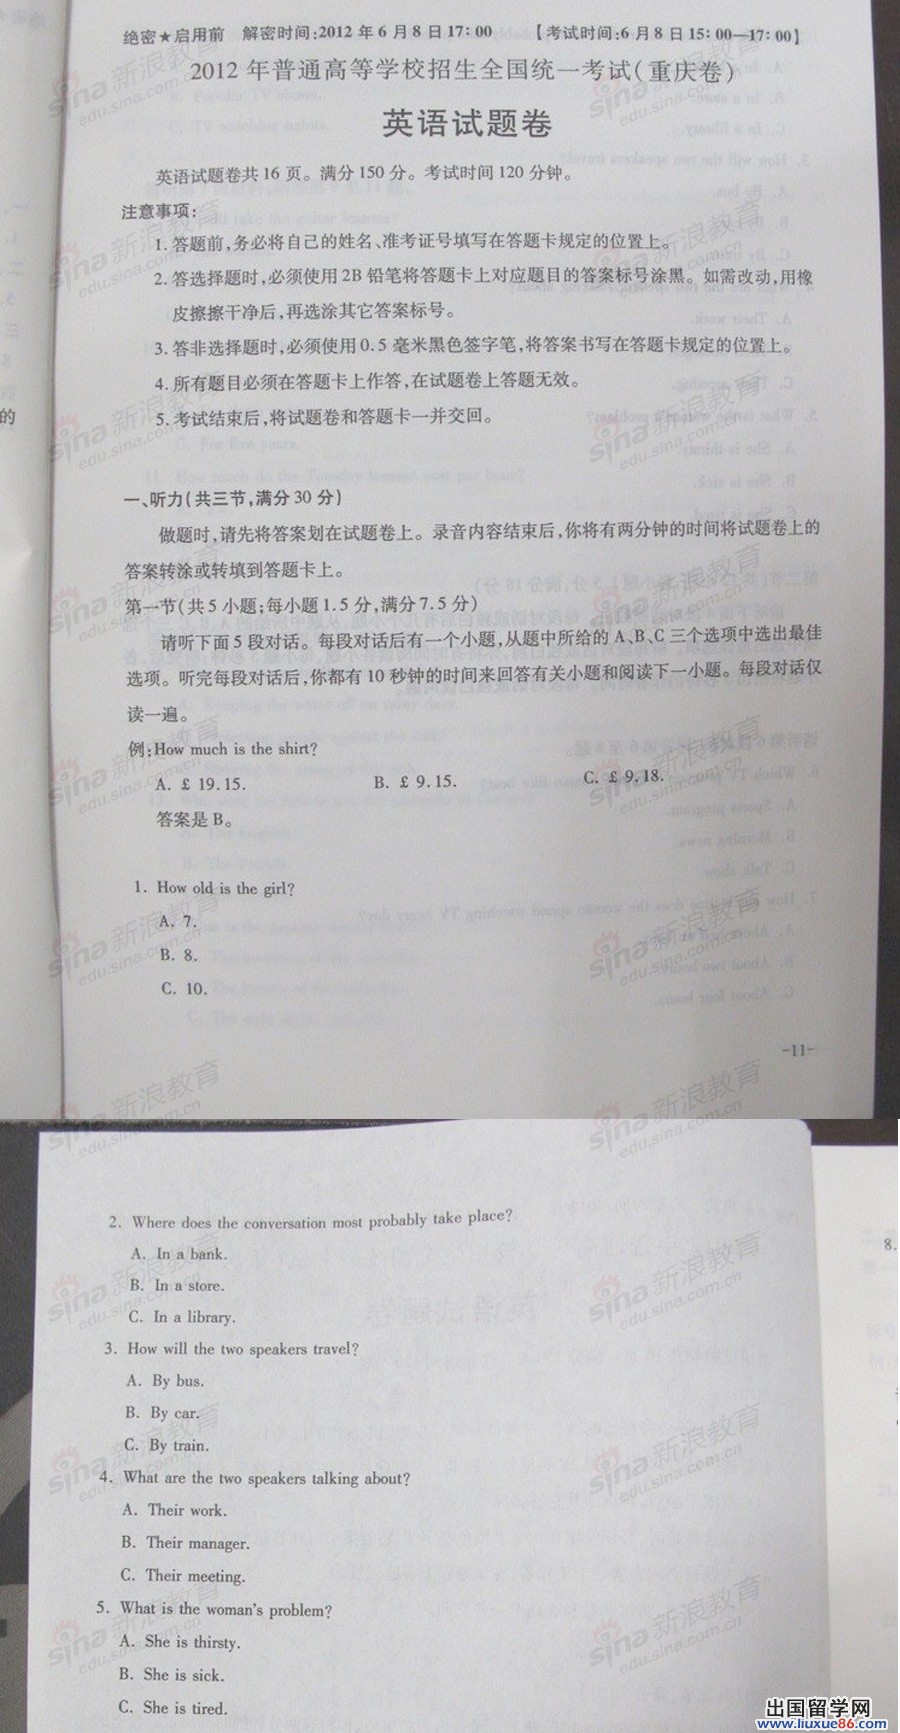 2012高考试题及答案:重庆市高考考试英语